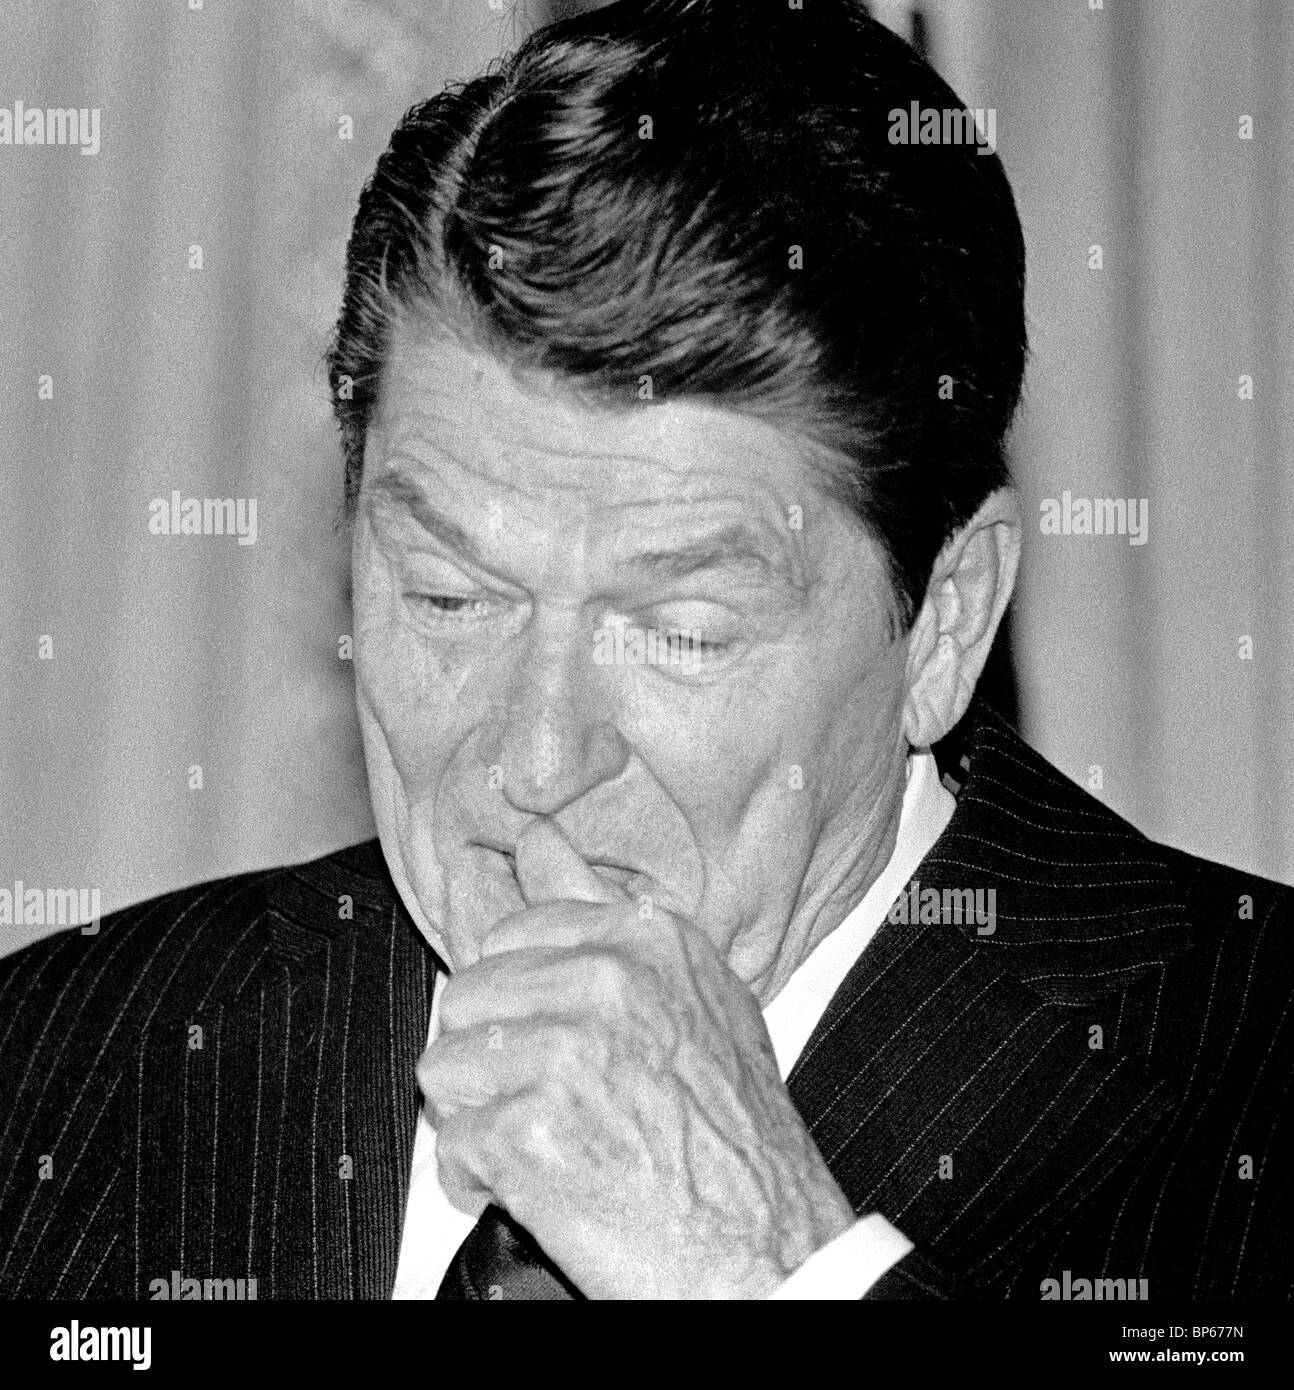 President Ronald Reagan at press conference in San Francisco, California, May 9, 1980. Stock Photo